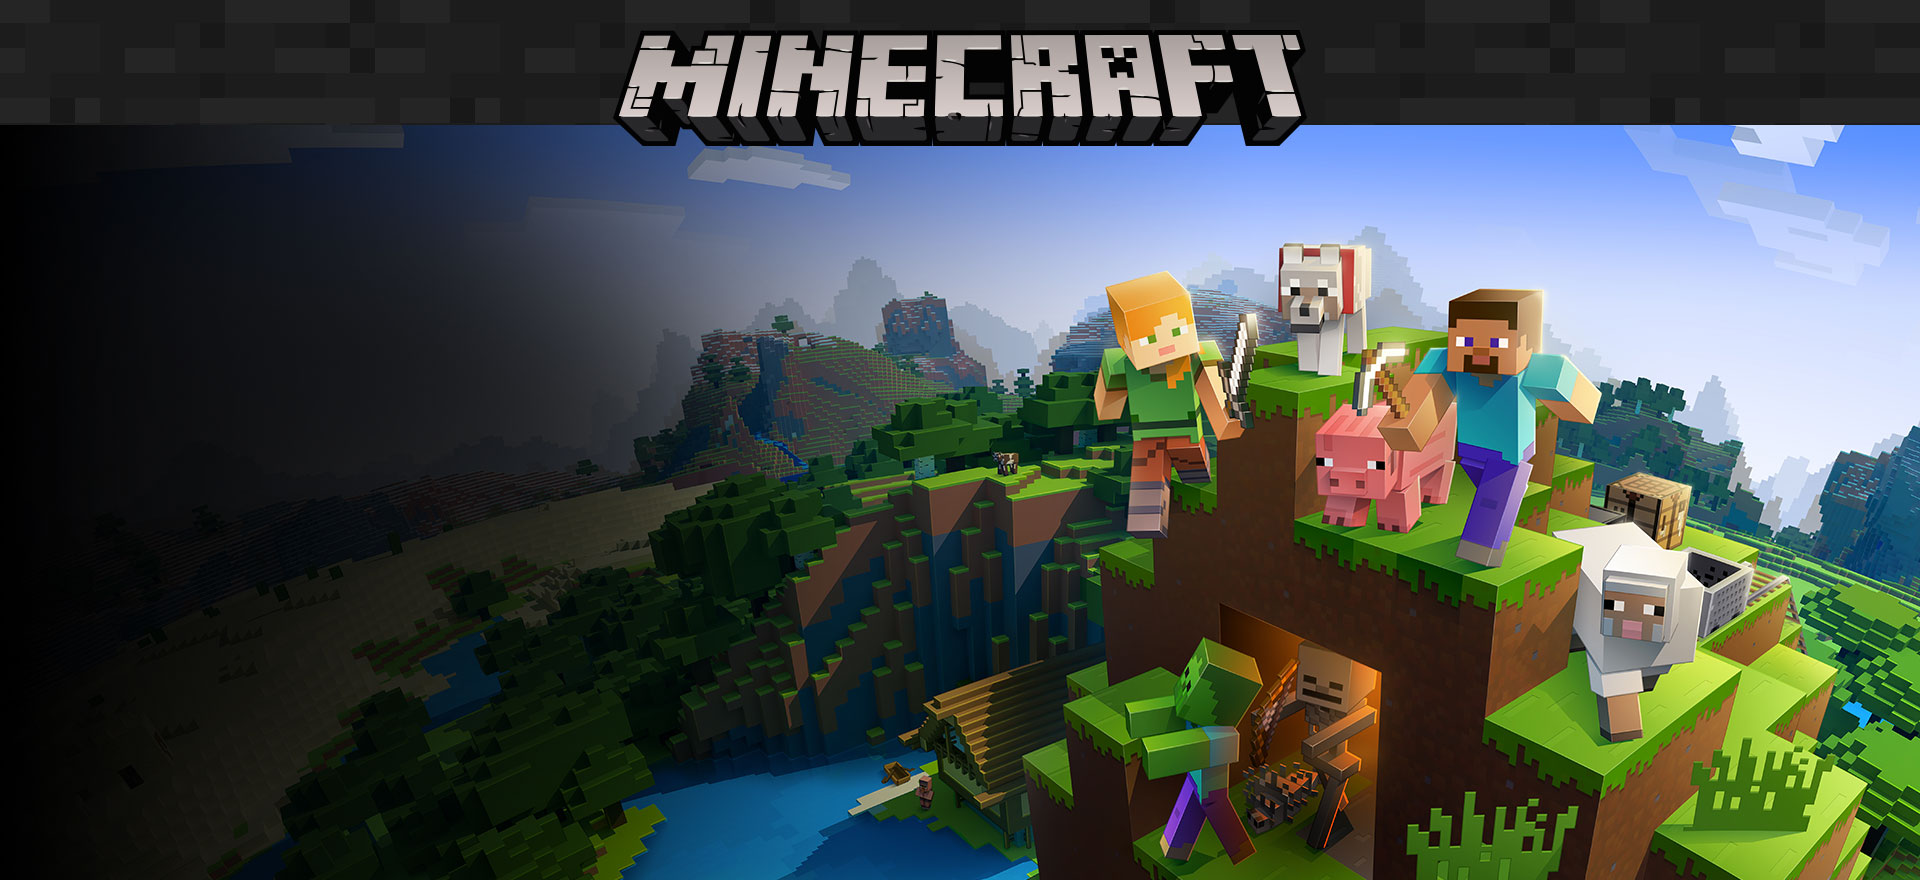 Продажи Minecraft более 200 миллионов, 126 миллионов человек играют ежемесячно 20